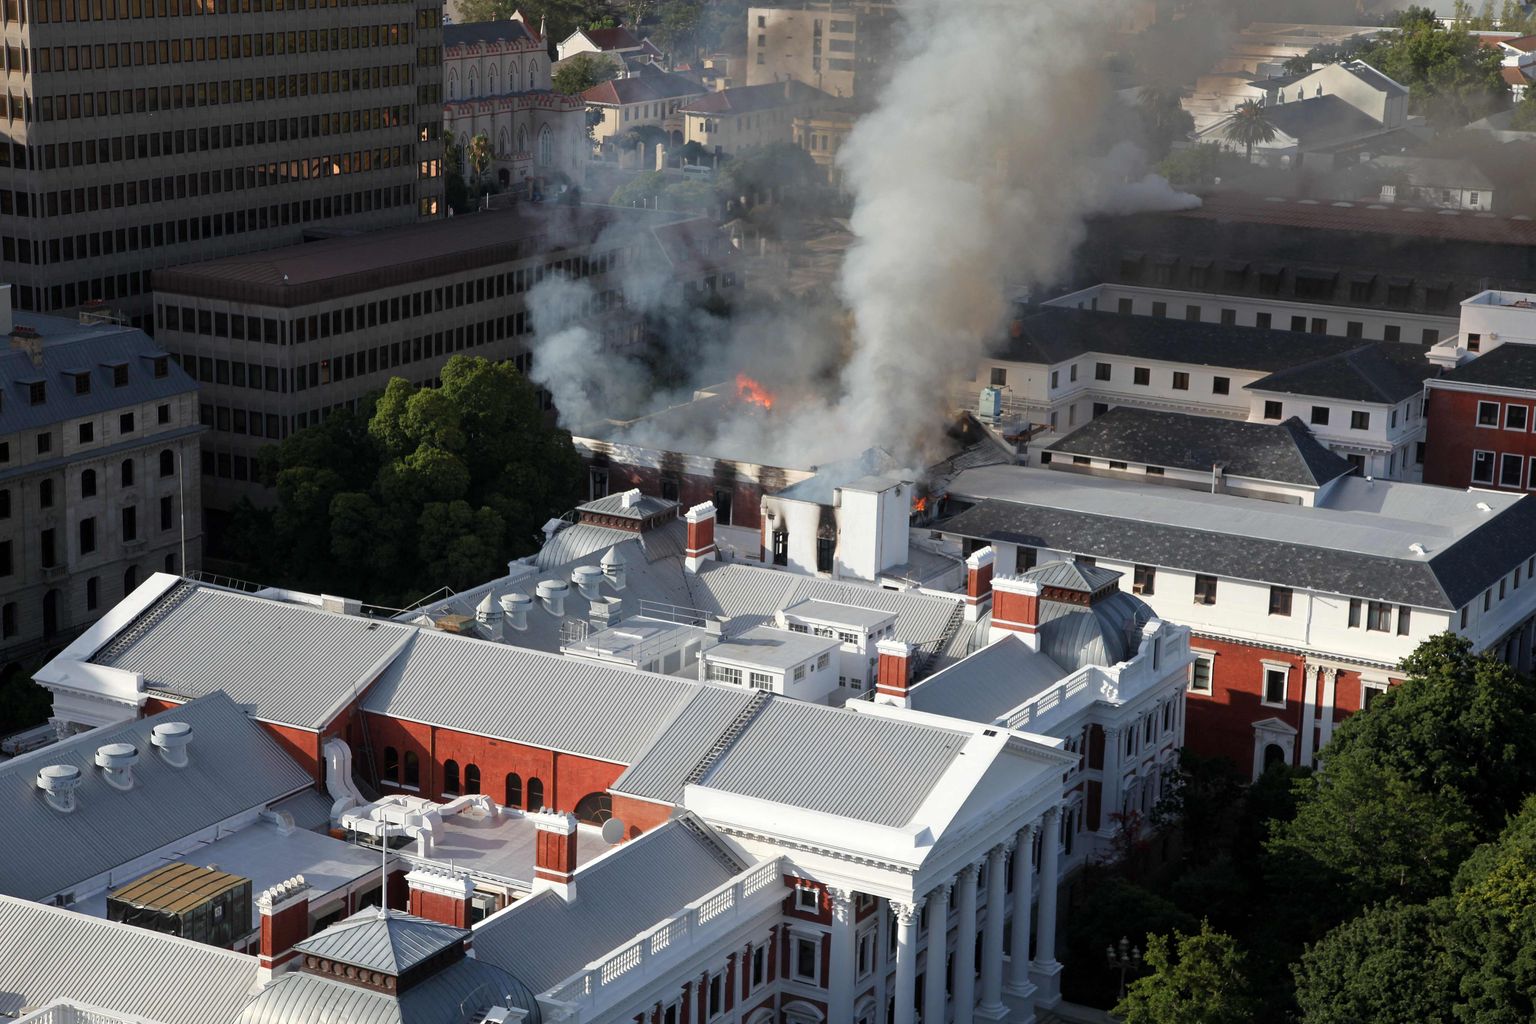 Izcēlies plašs ugunsgrēks Dienvidāfrikas Republikas (DĀR) parlamenta ēkā Keiptaunā.